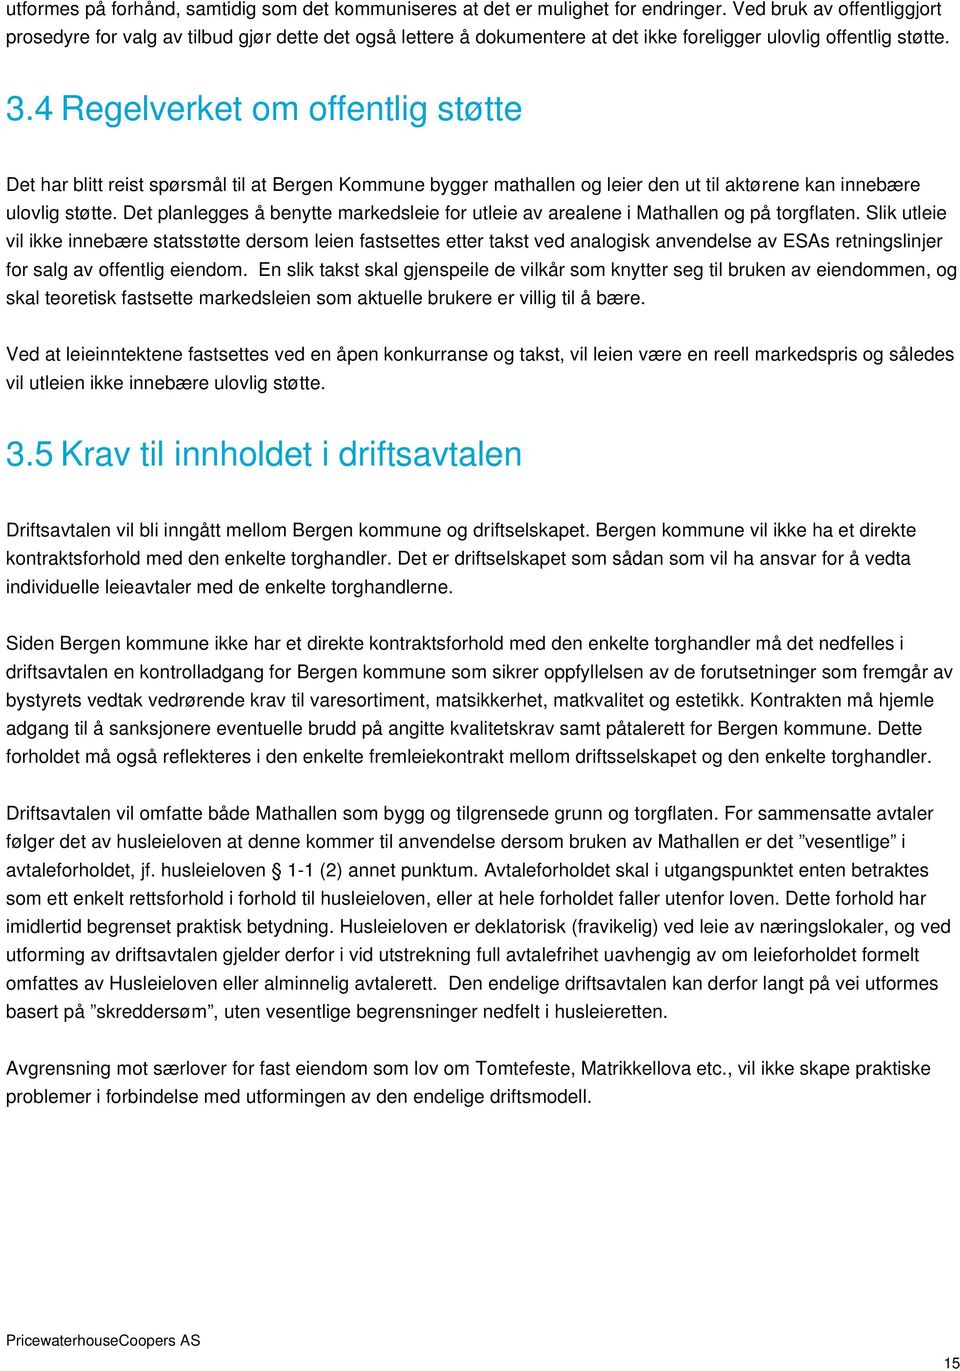 4 Regelverket om offentlig støtte Det har blitt reist spørsmål til at Bergen Kommune bygger mathallen og leier den ut til aktørene kan innebære ulovlig støtte.